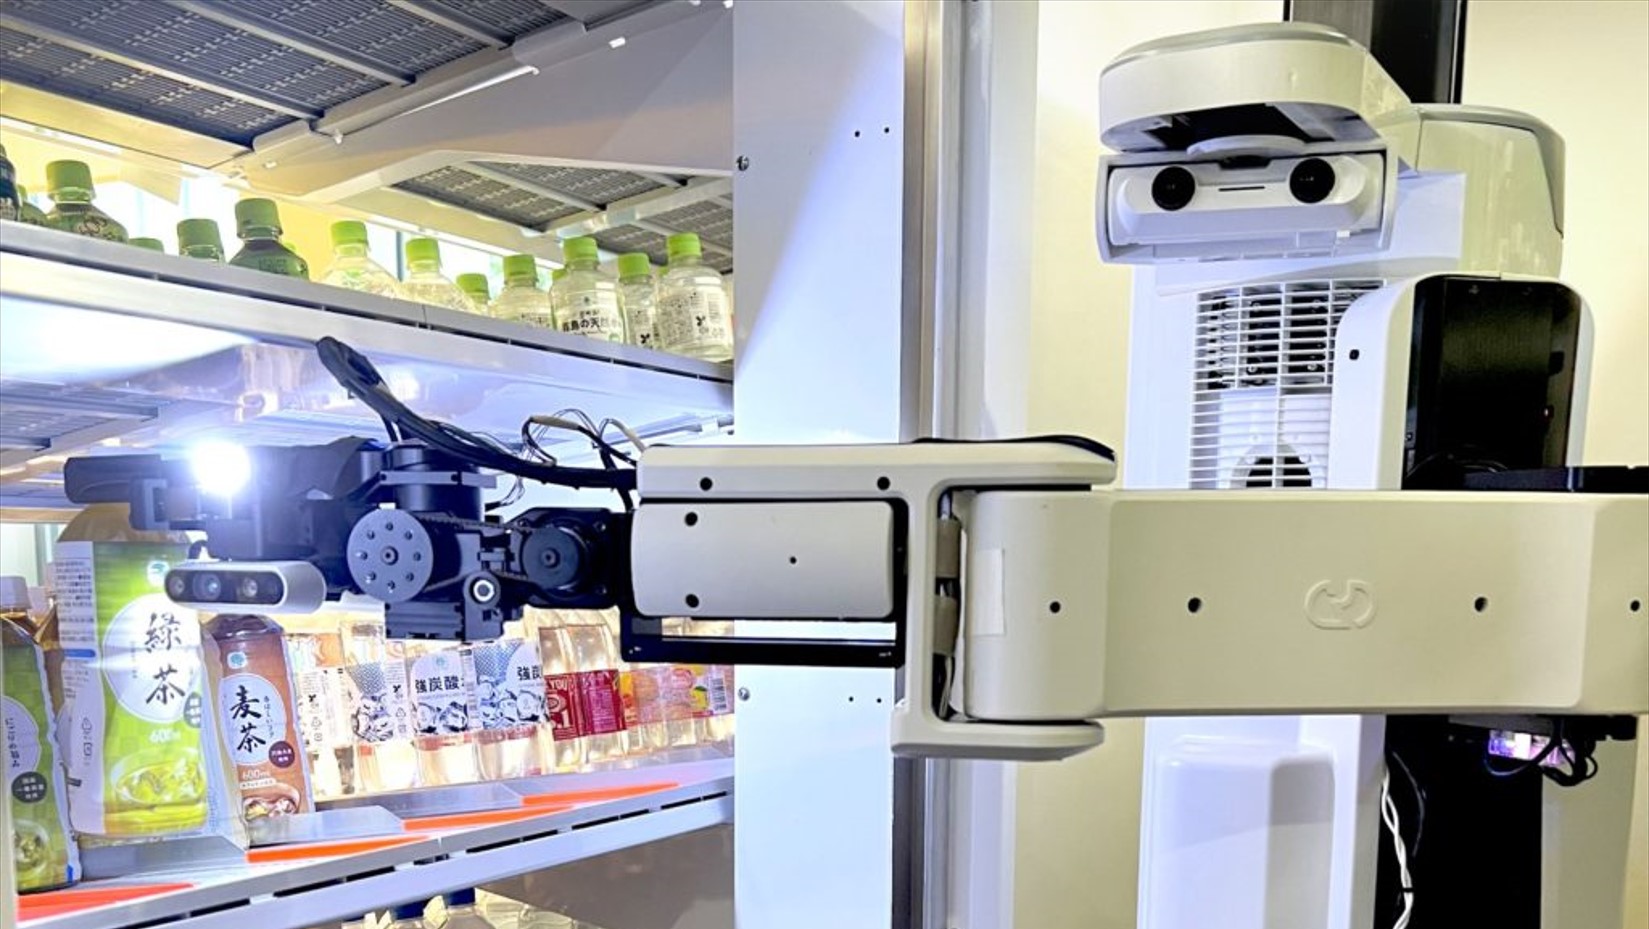 ファミリーマート、飲料補充AIロボットを300店舗へ導入─省人化と省力化に期待